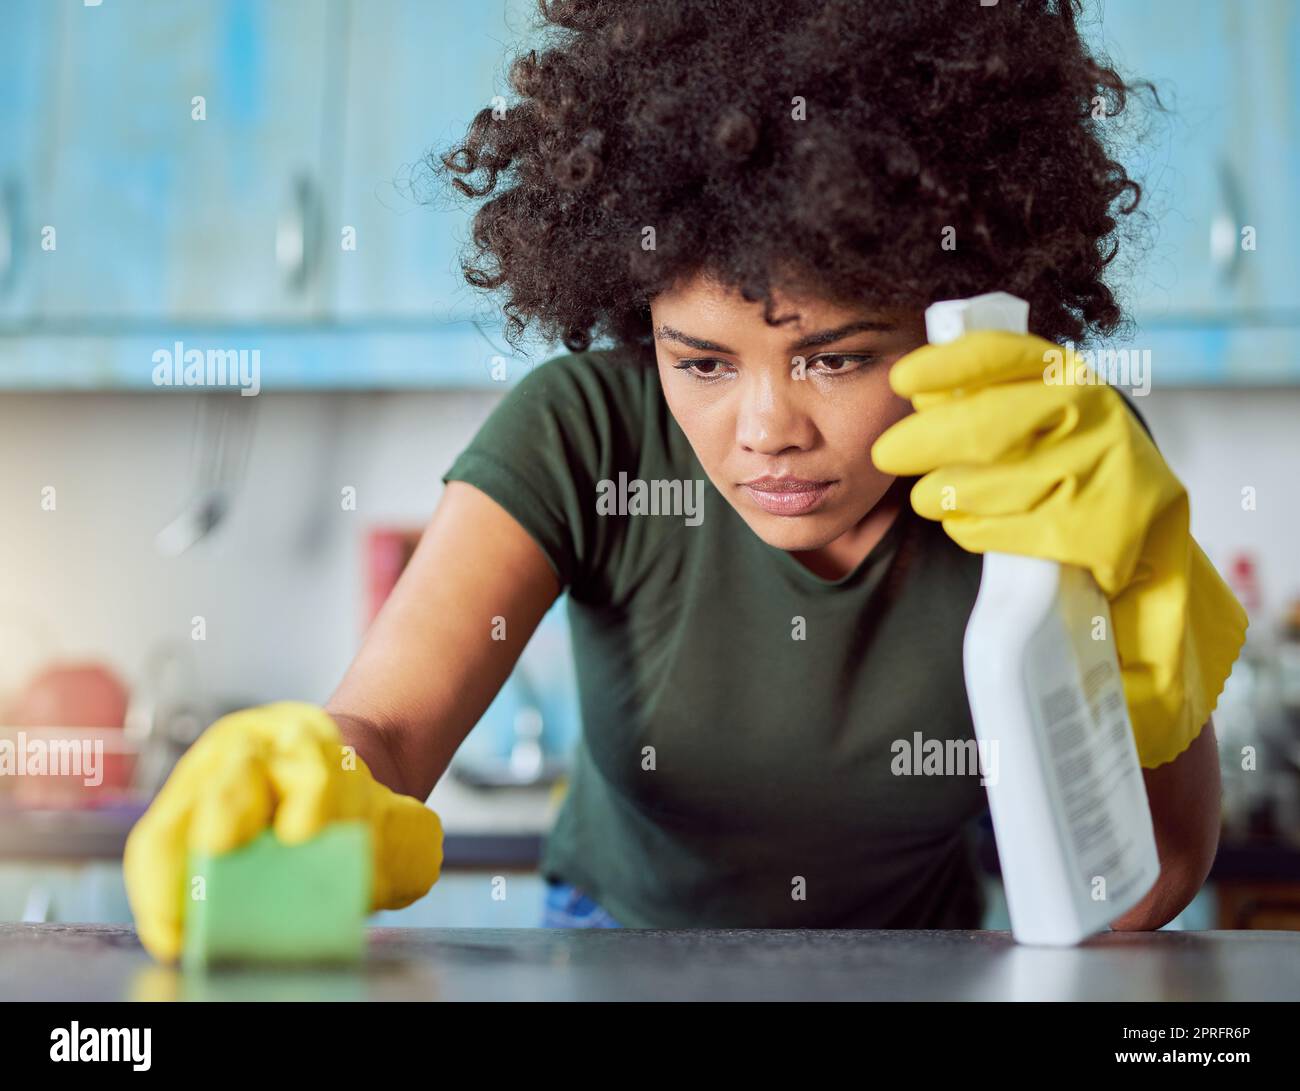 J'ai manqué une tache. Une jeune femme attrayante avec des gants jaunes nettoyant sa maison. Banque D'Images